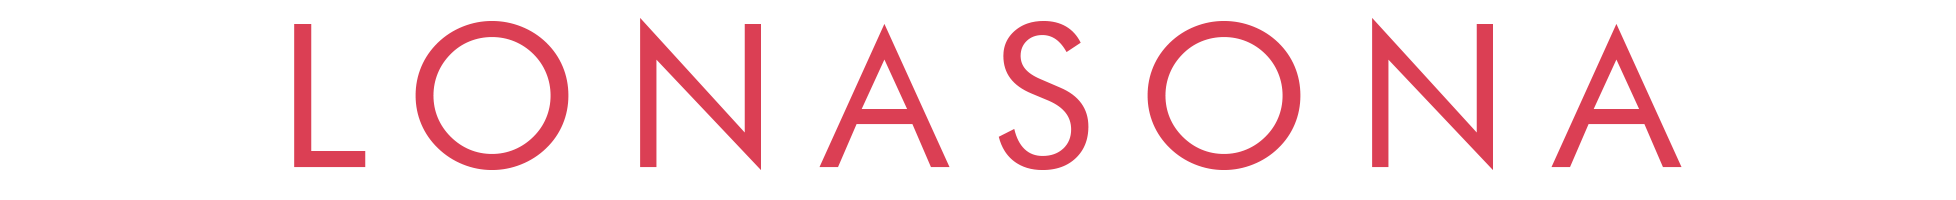 Lonasona Text Logo